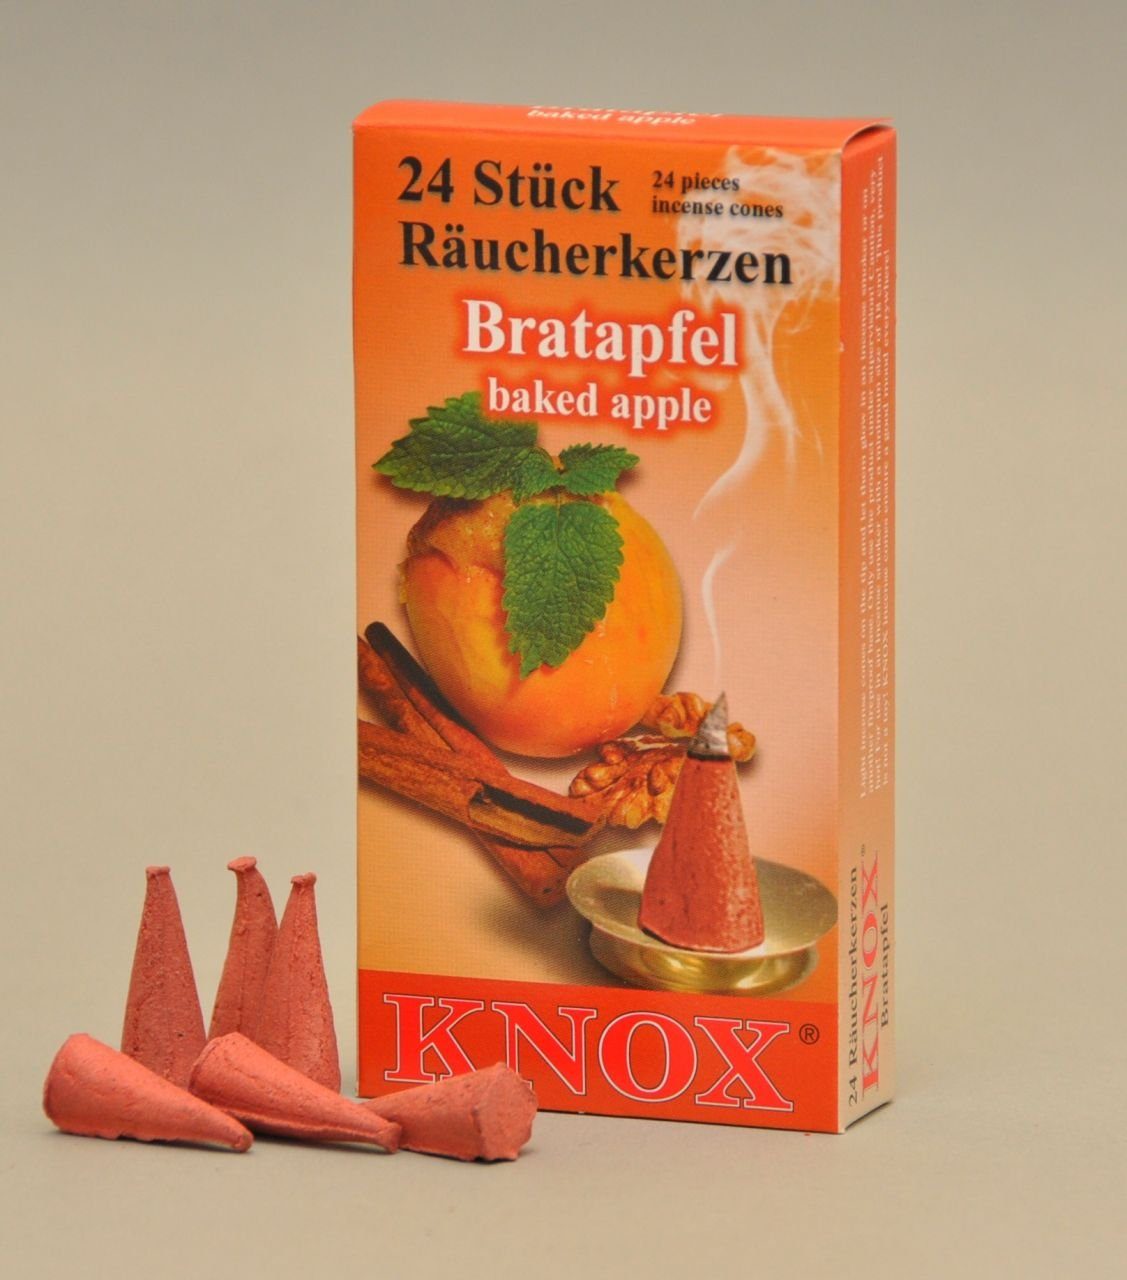 Bratapfel KNOX Knox Stück Räucherhaus Räucherkerzen 24 -